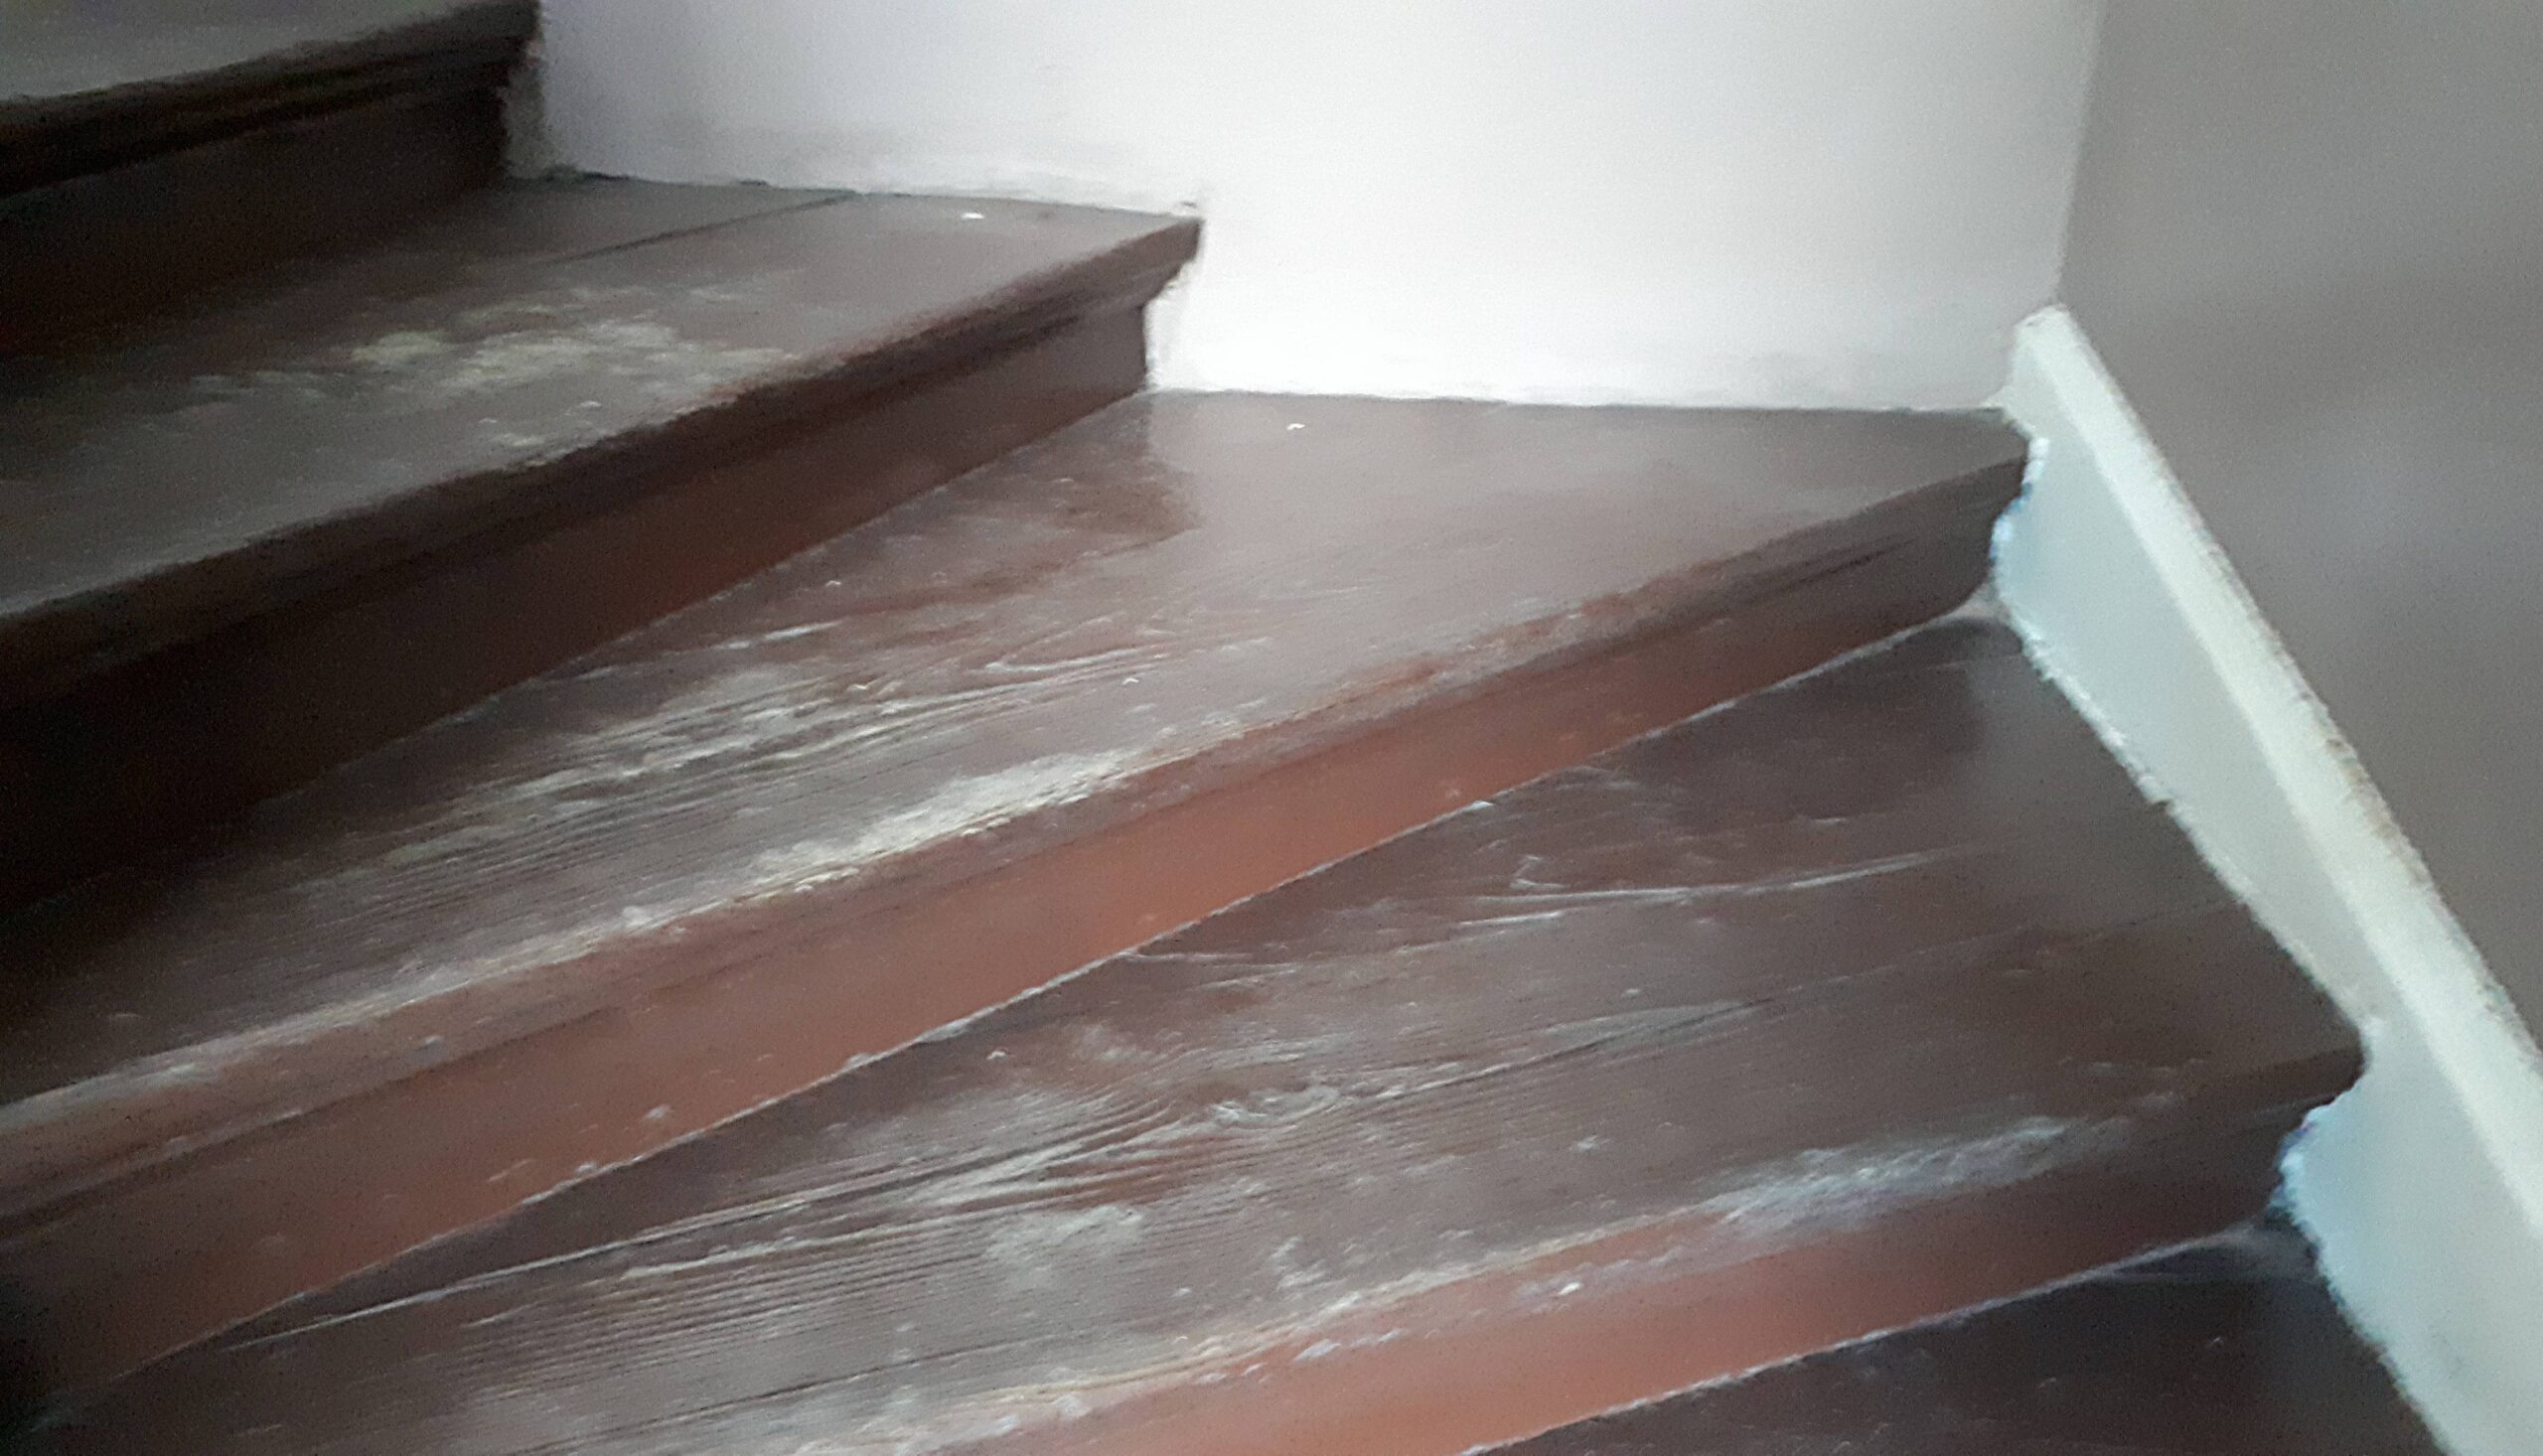 Klatka schodowa. Zakręt drewnianych schodów przed ostatnim piętrem. Fot. Robert Marcinkowski 2022 r., źródło: Res in Ornamento II.